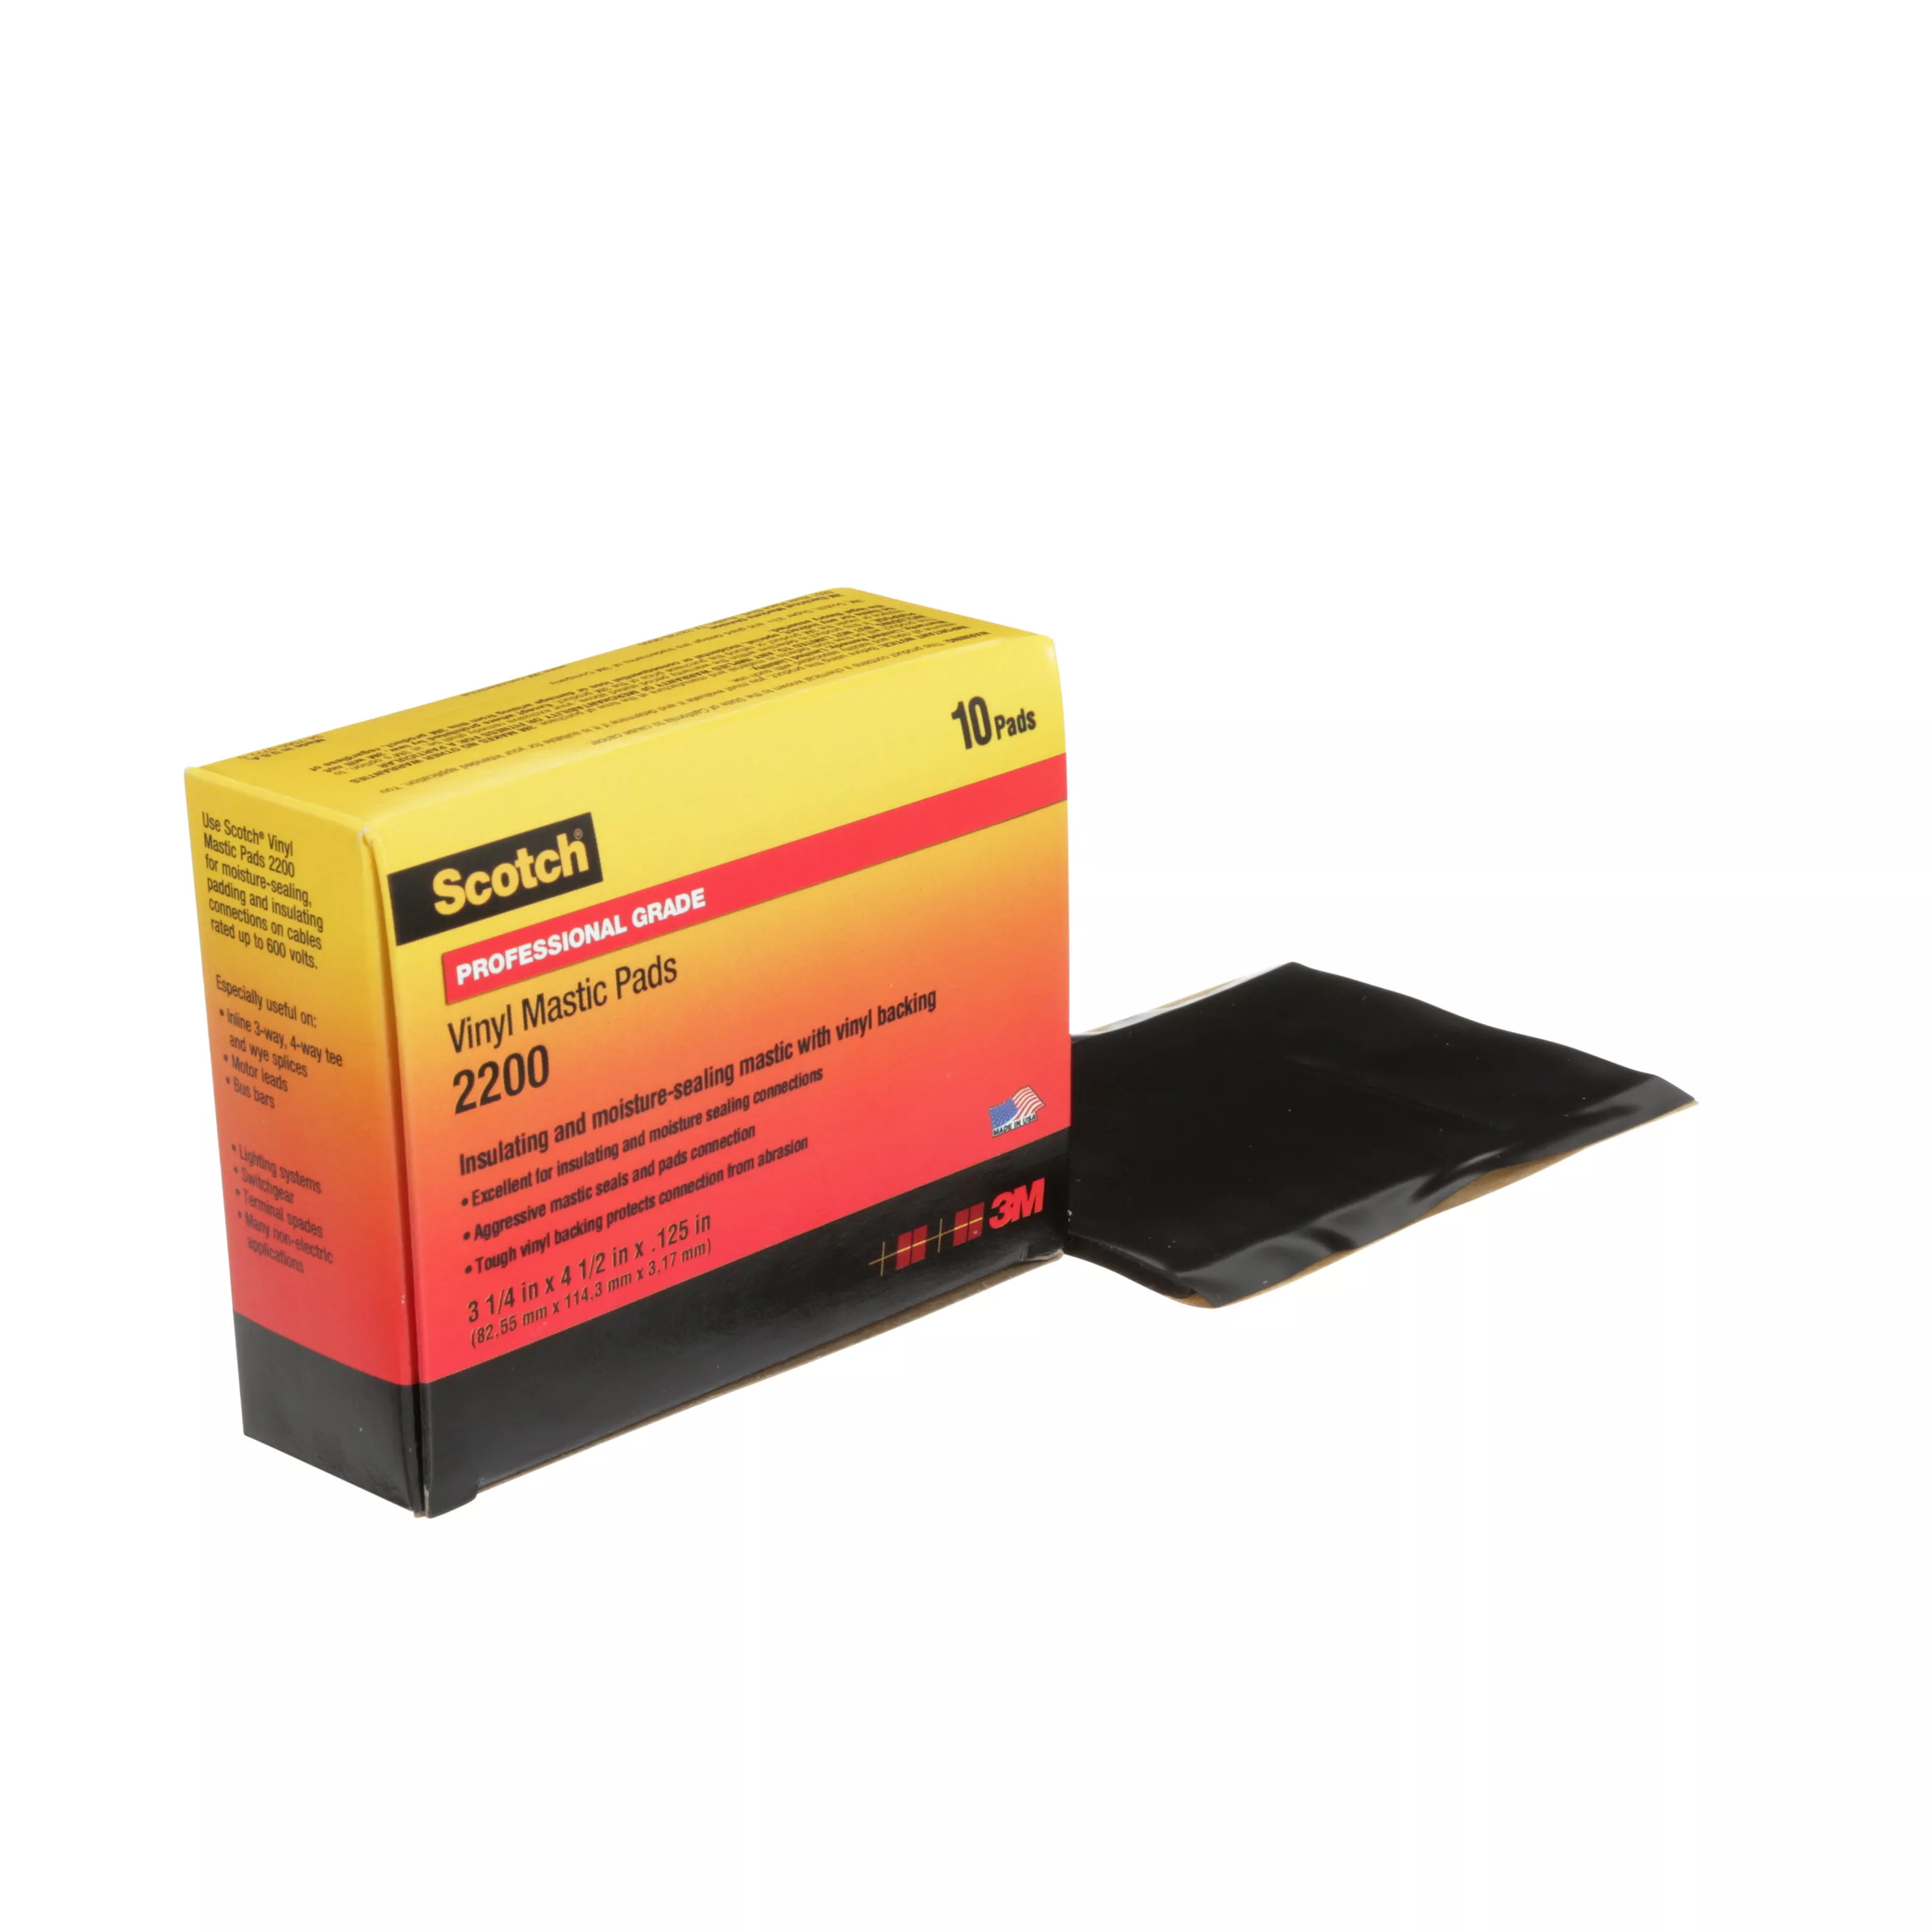 Scotch® Vinyl Mastic Pad 2200, 3-1/4 in x 4-1/2 in, Black, 10
pads/carton, 50 pads/Case